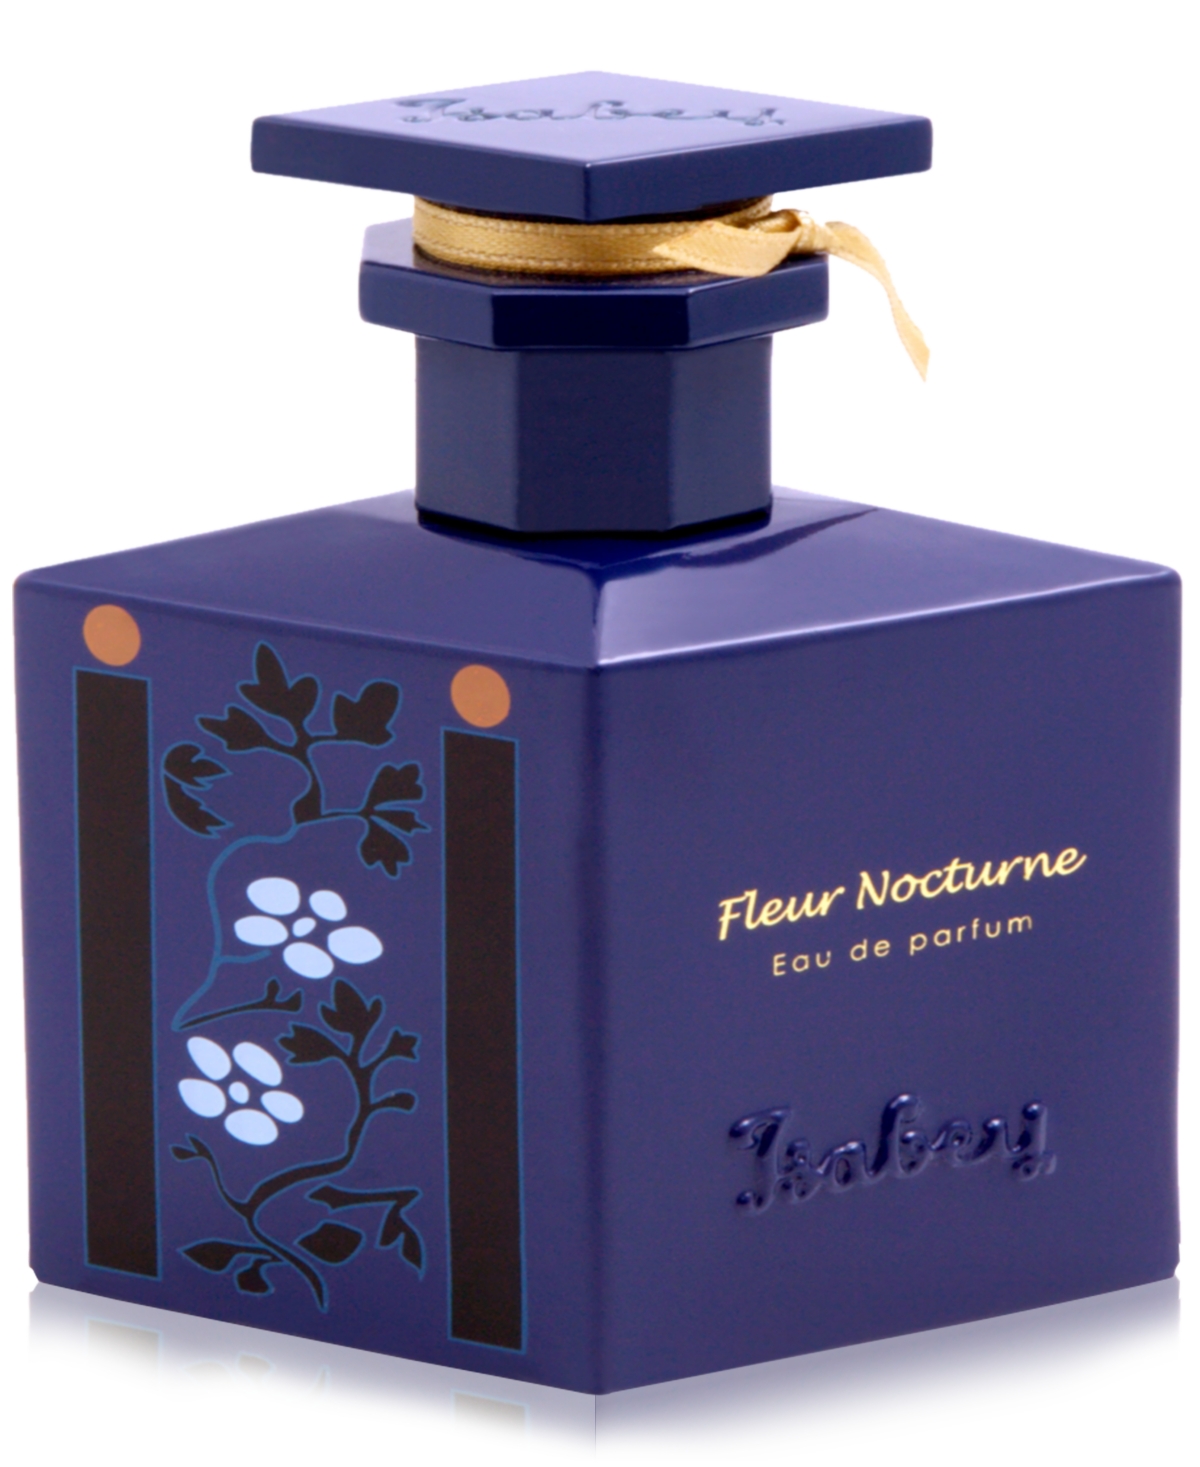 Fleur Nocturne Eau de Parfum, 1.6 oz.